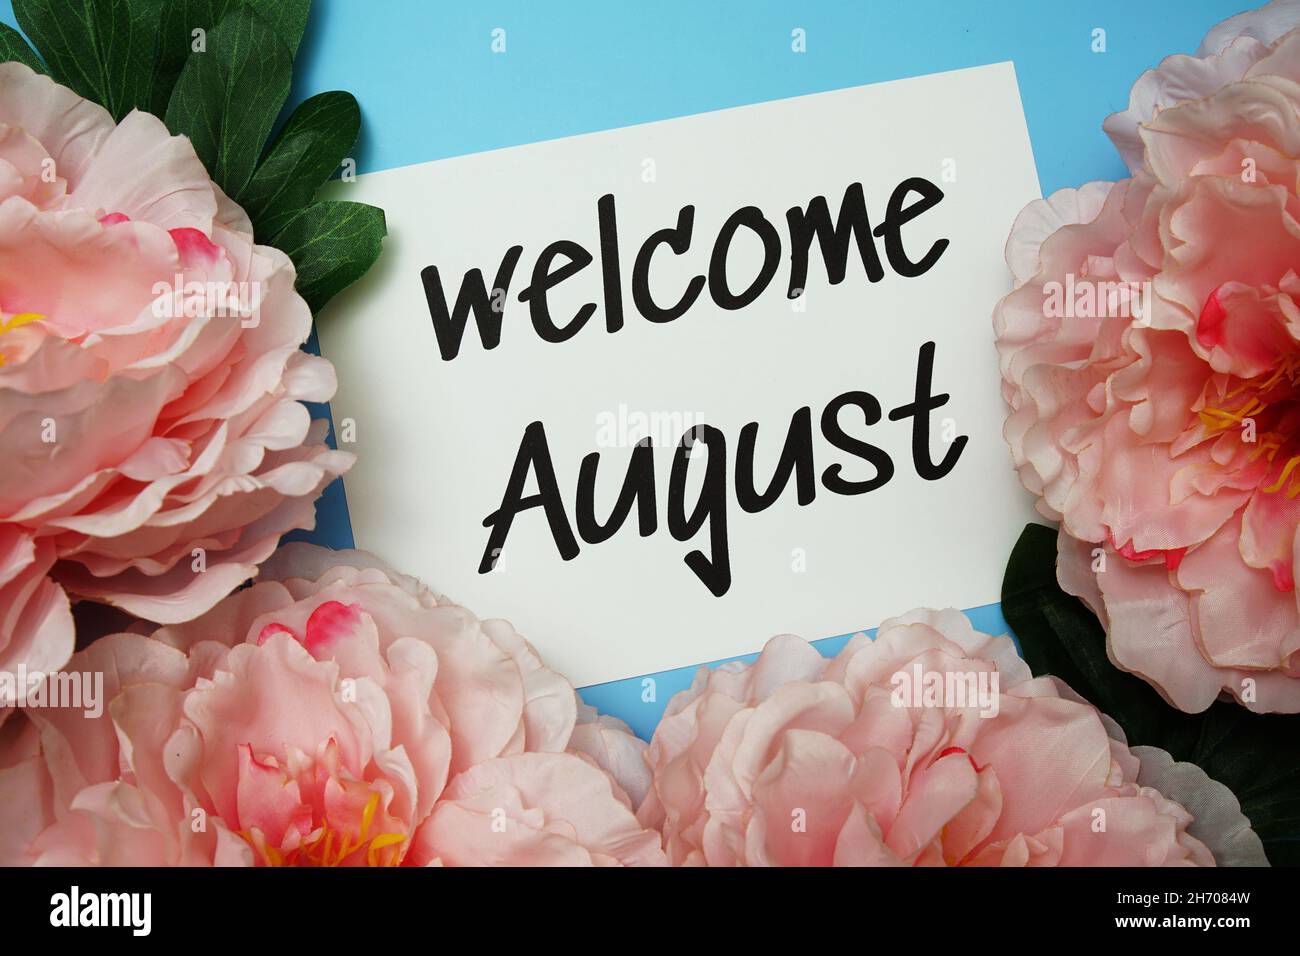 Willkommen August Typografie Text mit Pfingstrosen Blumen auf blauem  Hintergrund Stockfotografie - Alamy